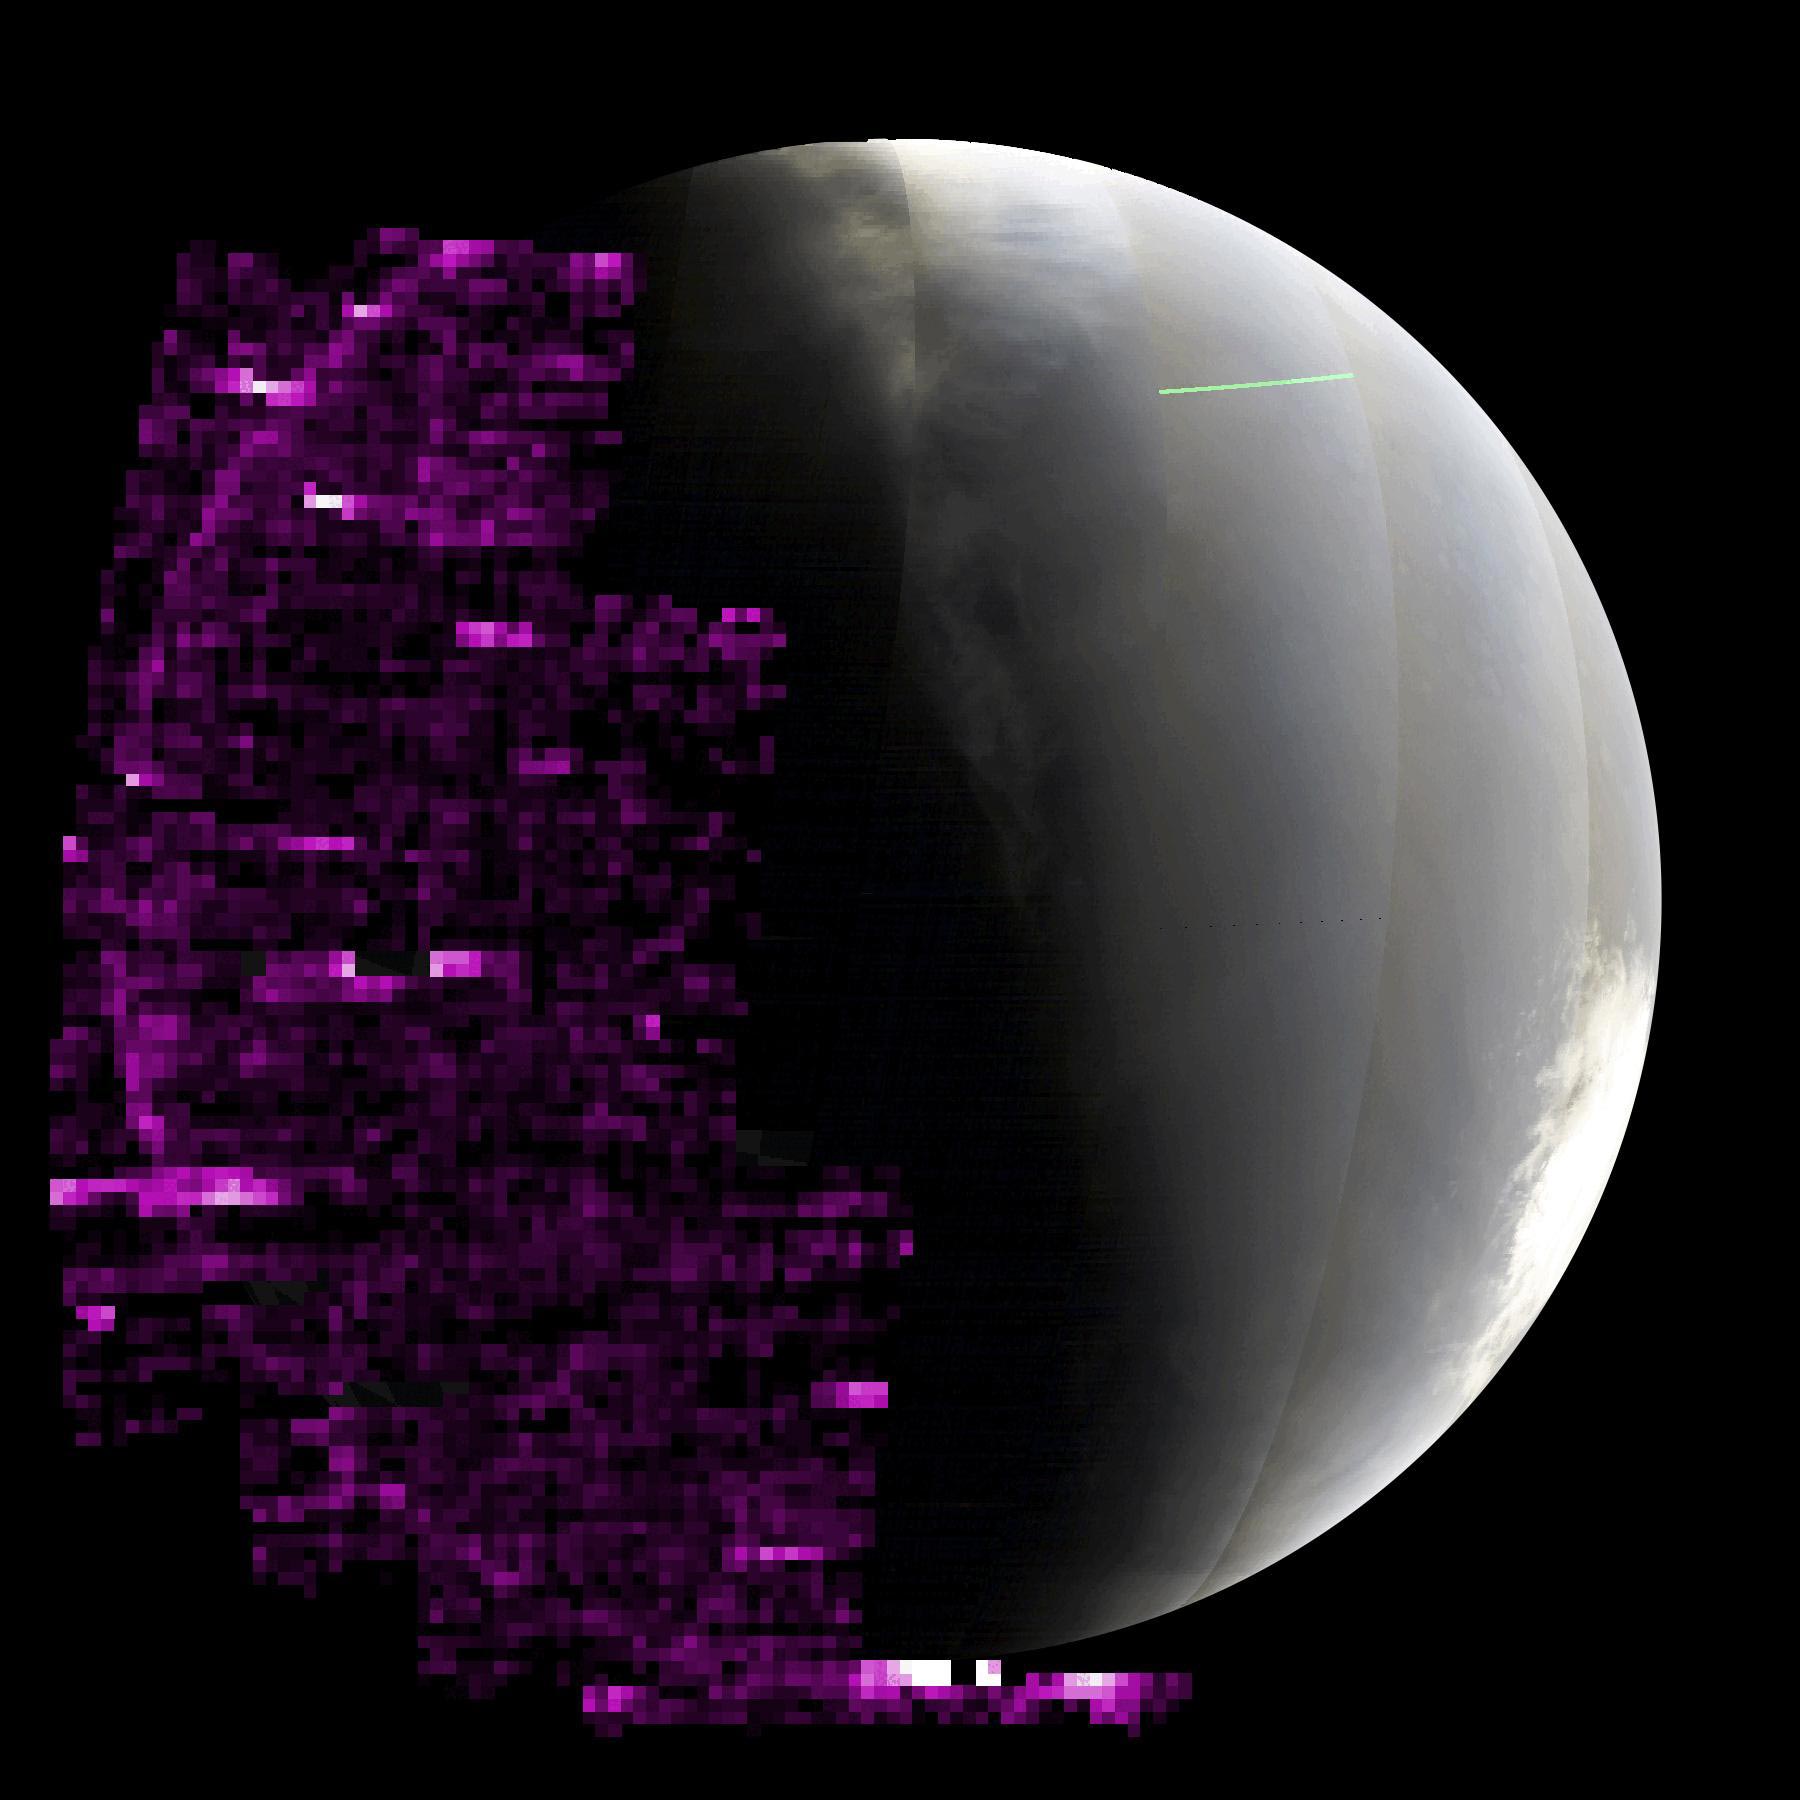 La NASA regarde la planète rouge s’illuminer lors d’une tempête solaire épique